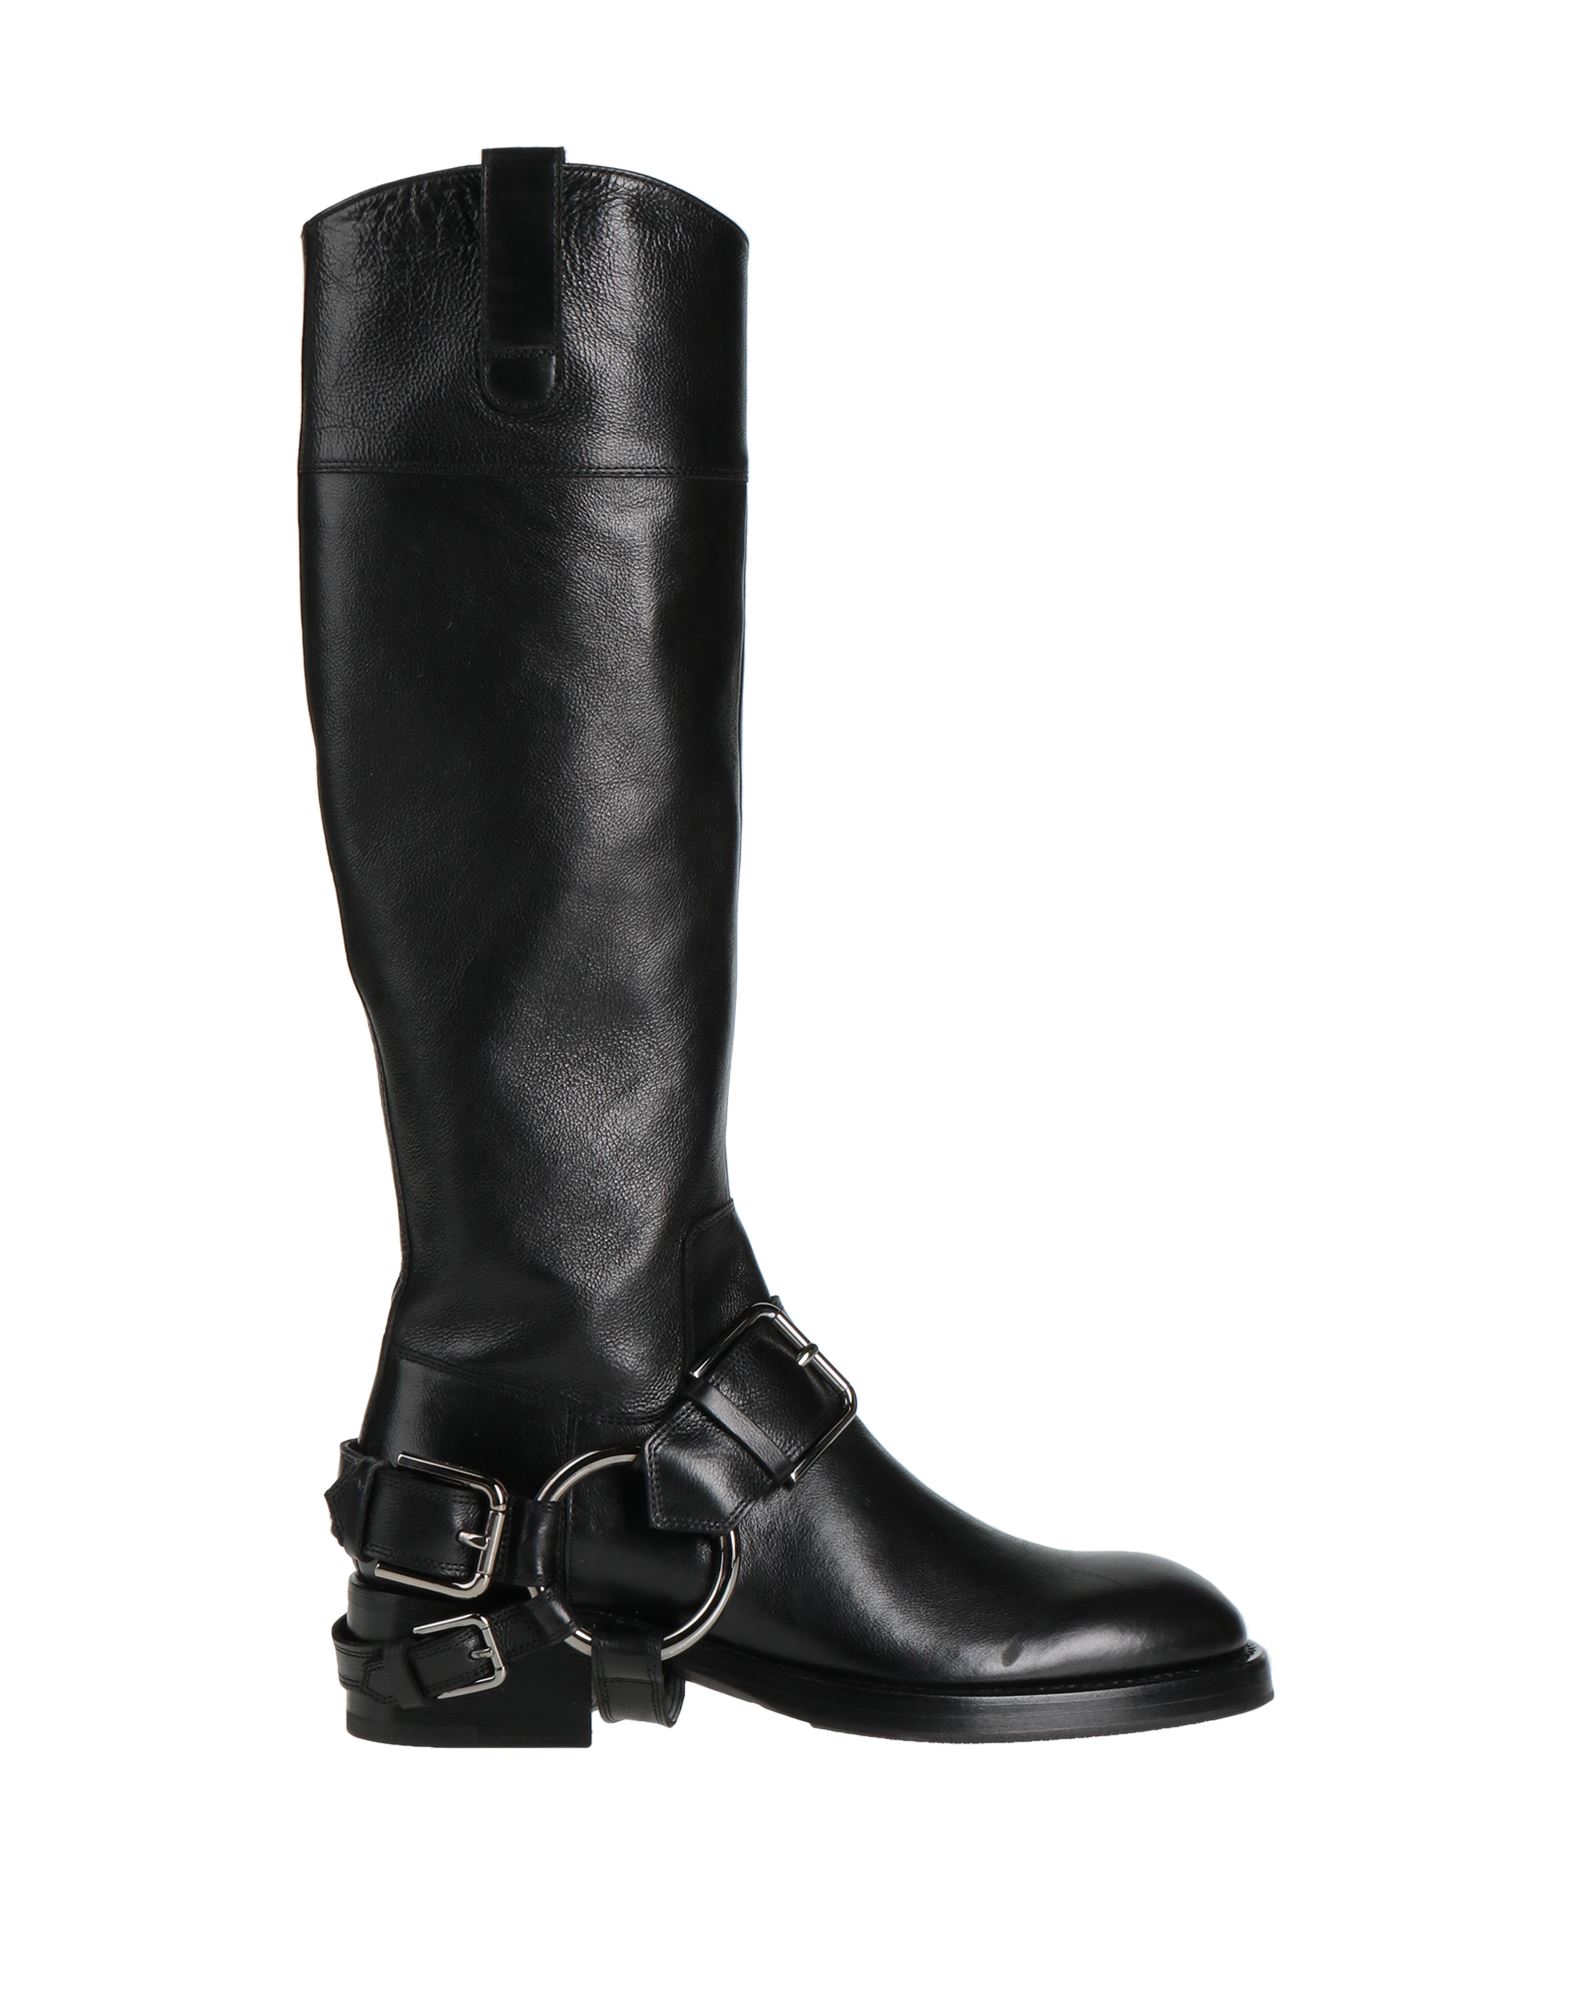 Dolce & Gabbana Woman Boot Black Size 10.5 Calfskin